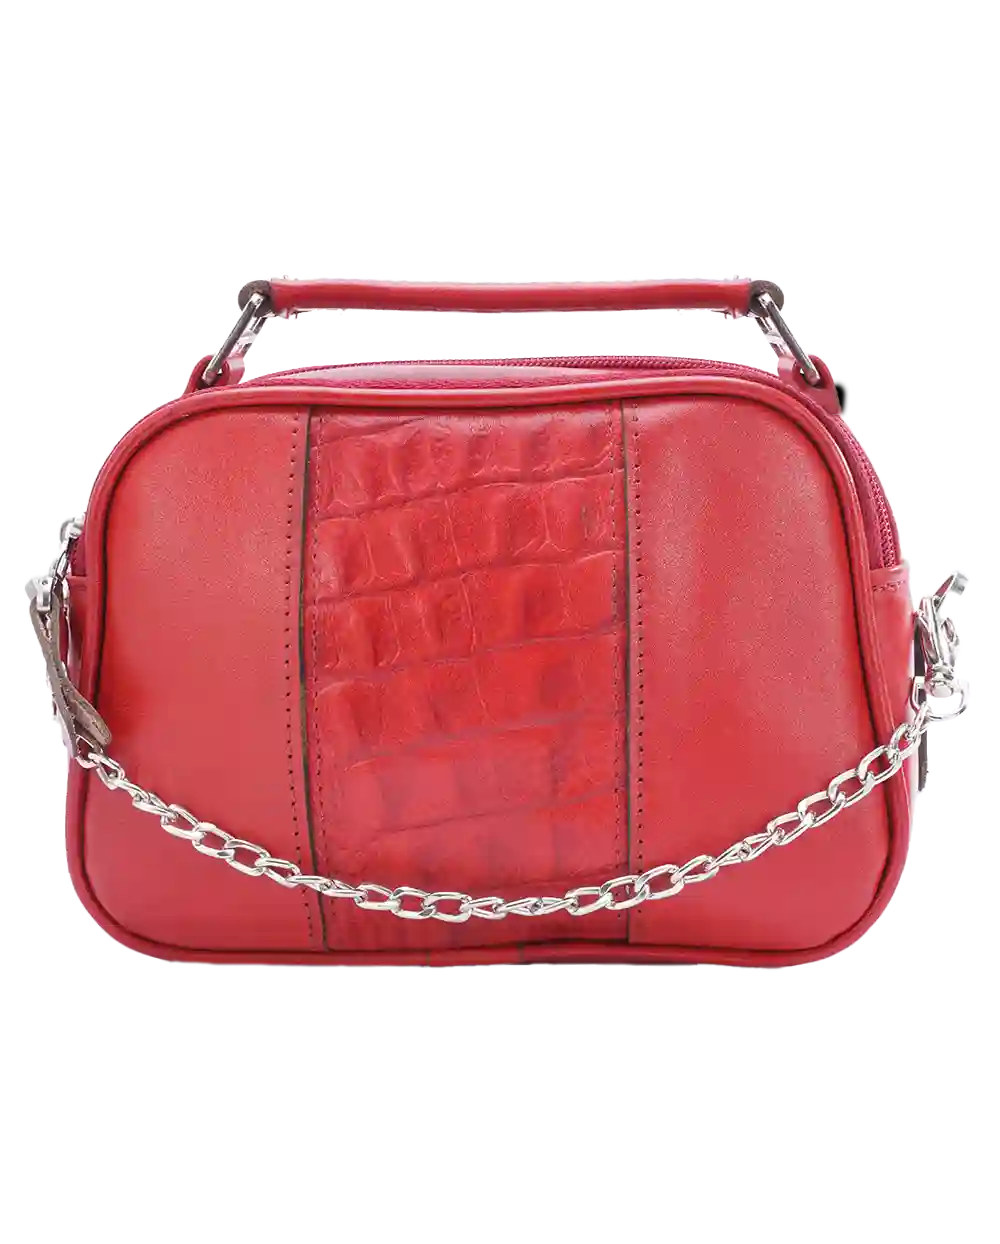 قیمت و خرید کیف دوشی زنانه چرم طبیعی طرح درنا مدل 1587 رنگ قرمز همراه با ارسال رایگان و 6 ماه گارانتی معتبر | کیف رودوشی زنانه چرمی